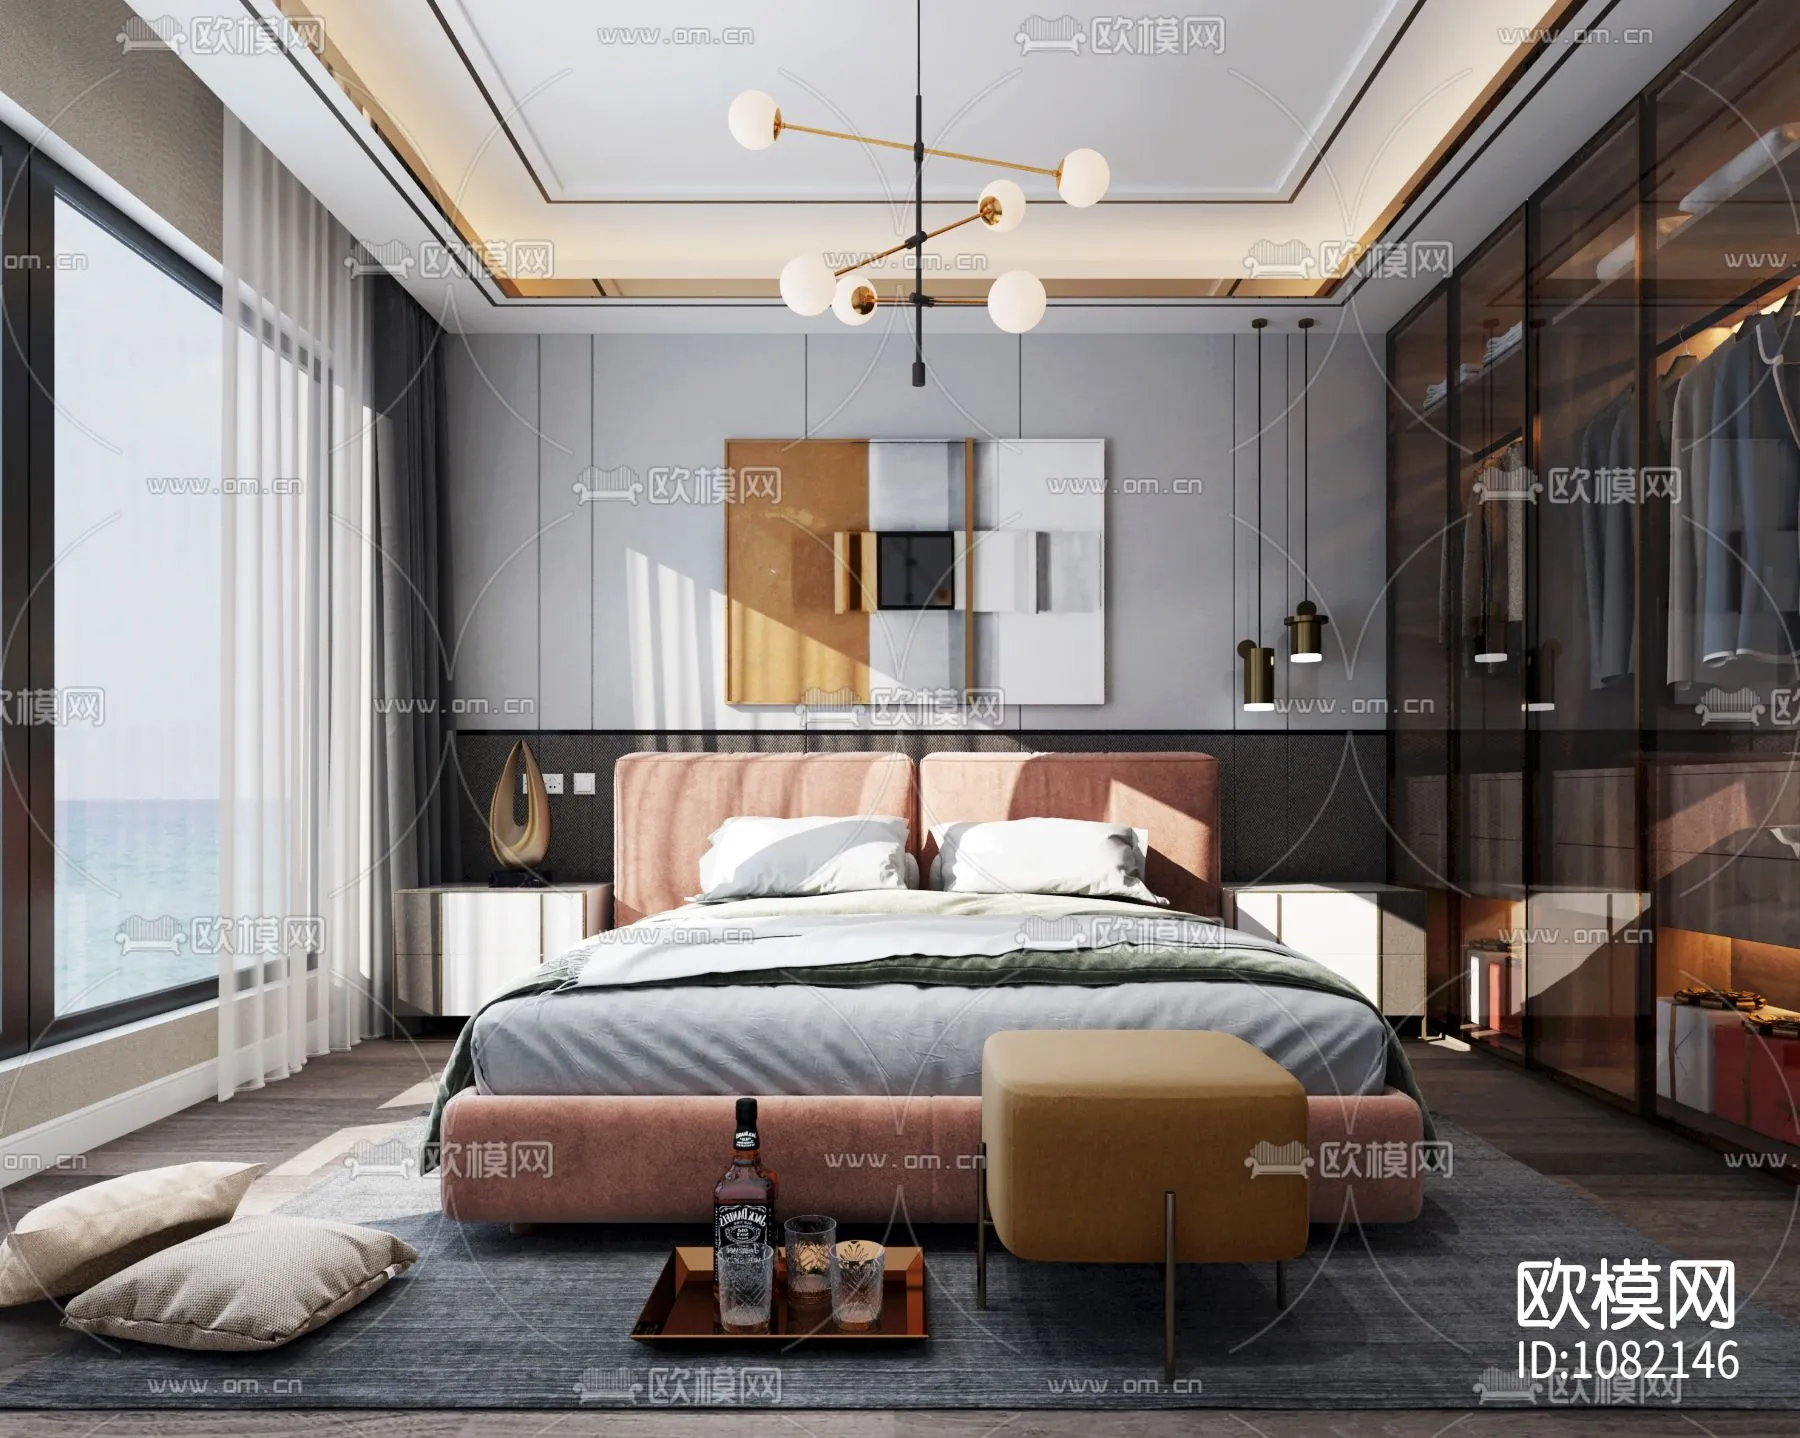 Bedroom 3D Scenes – 0174